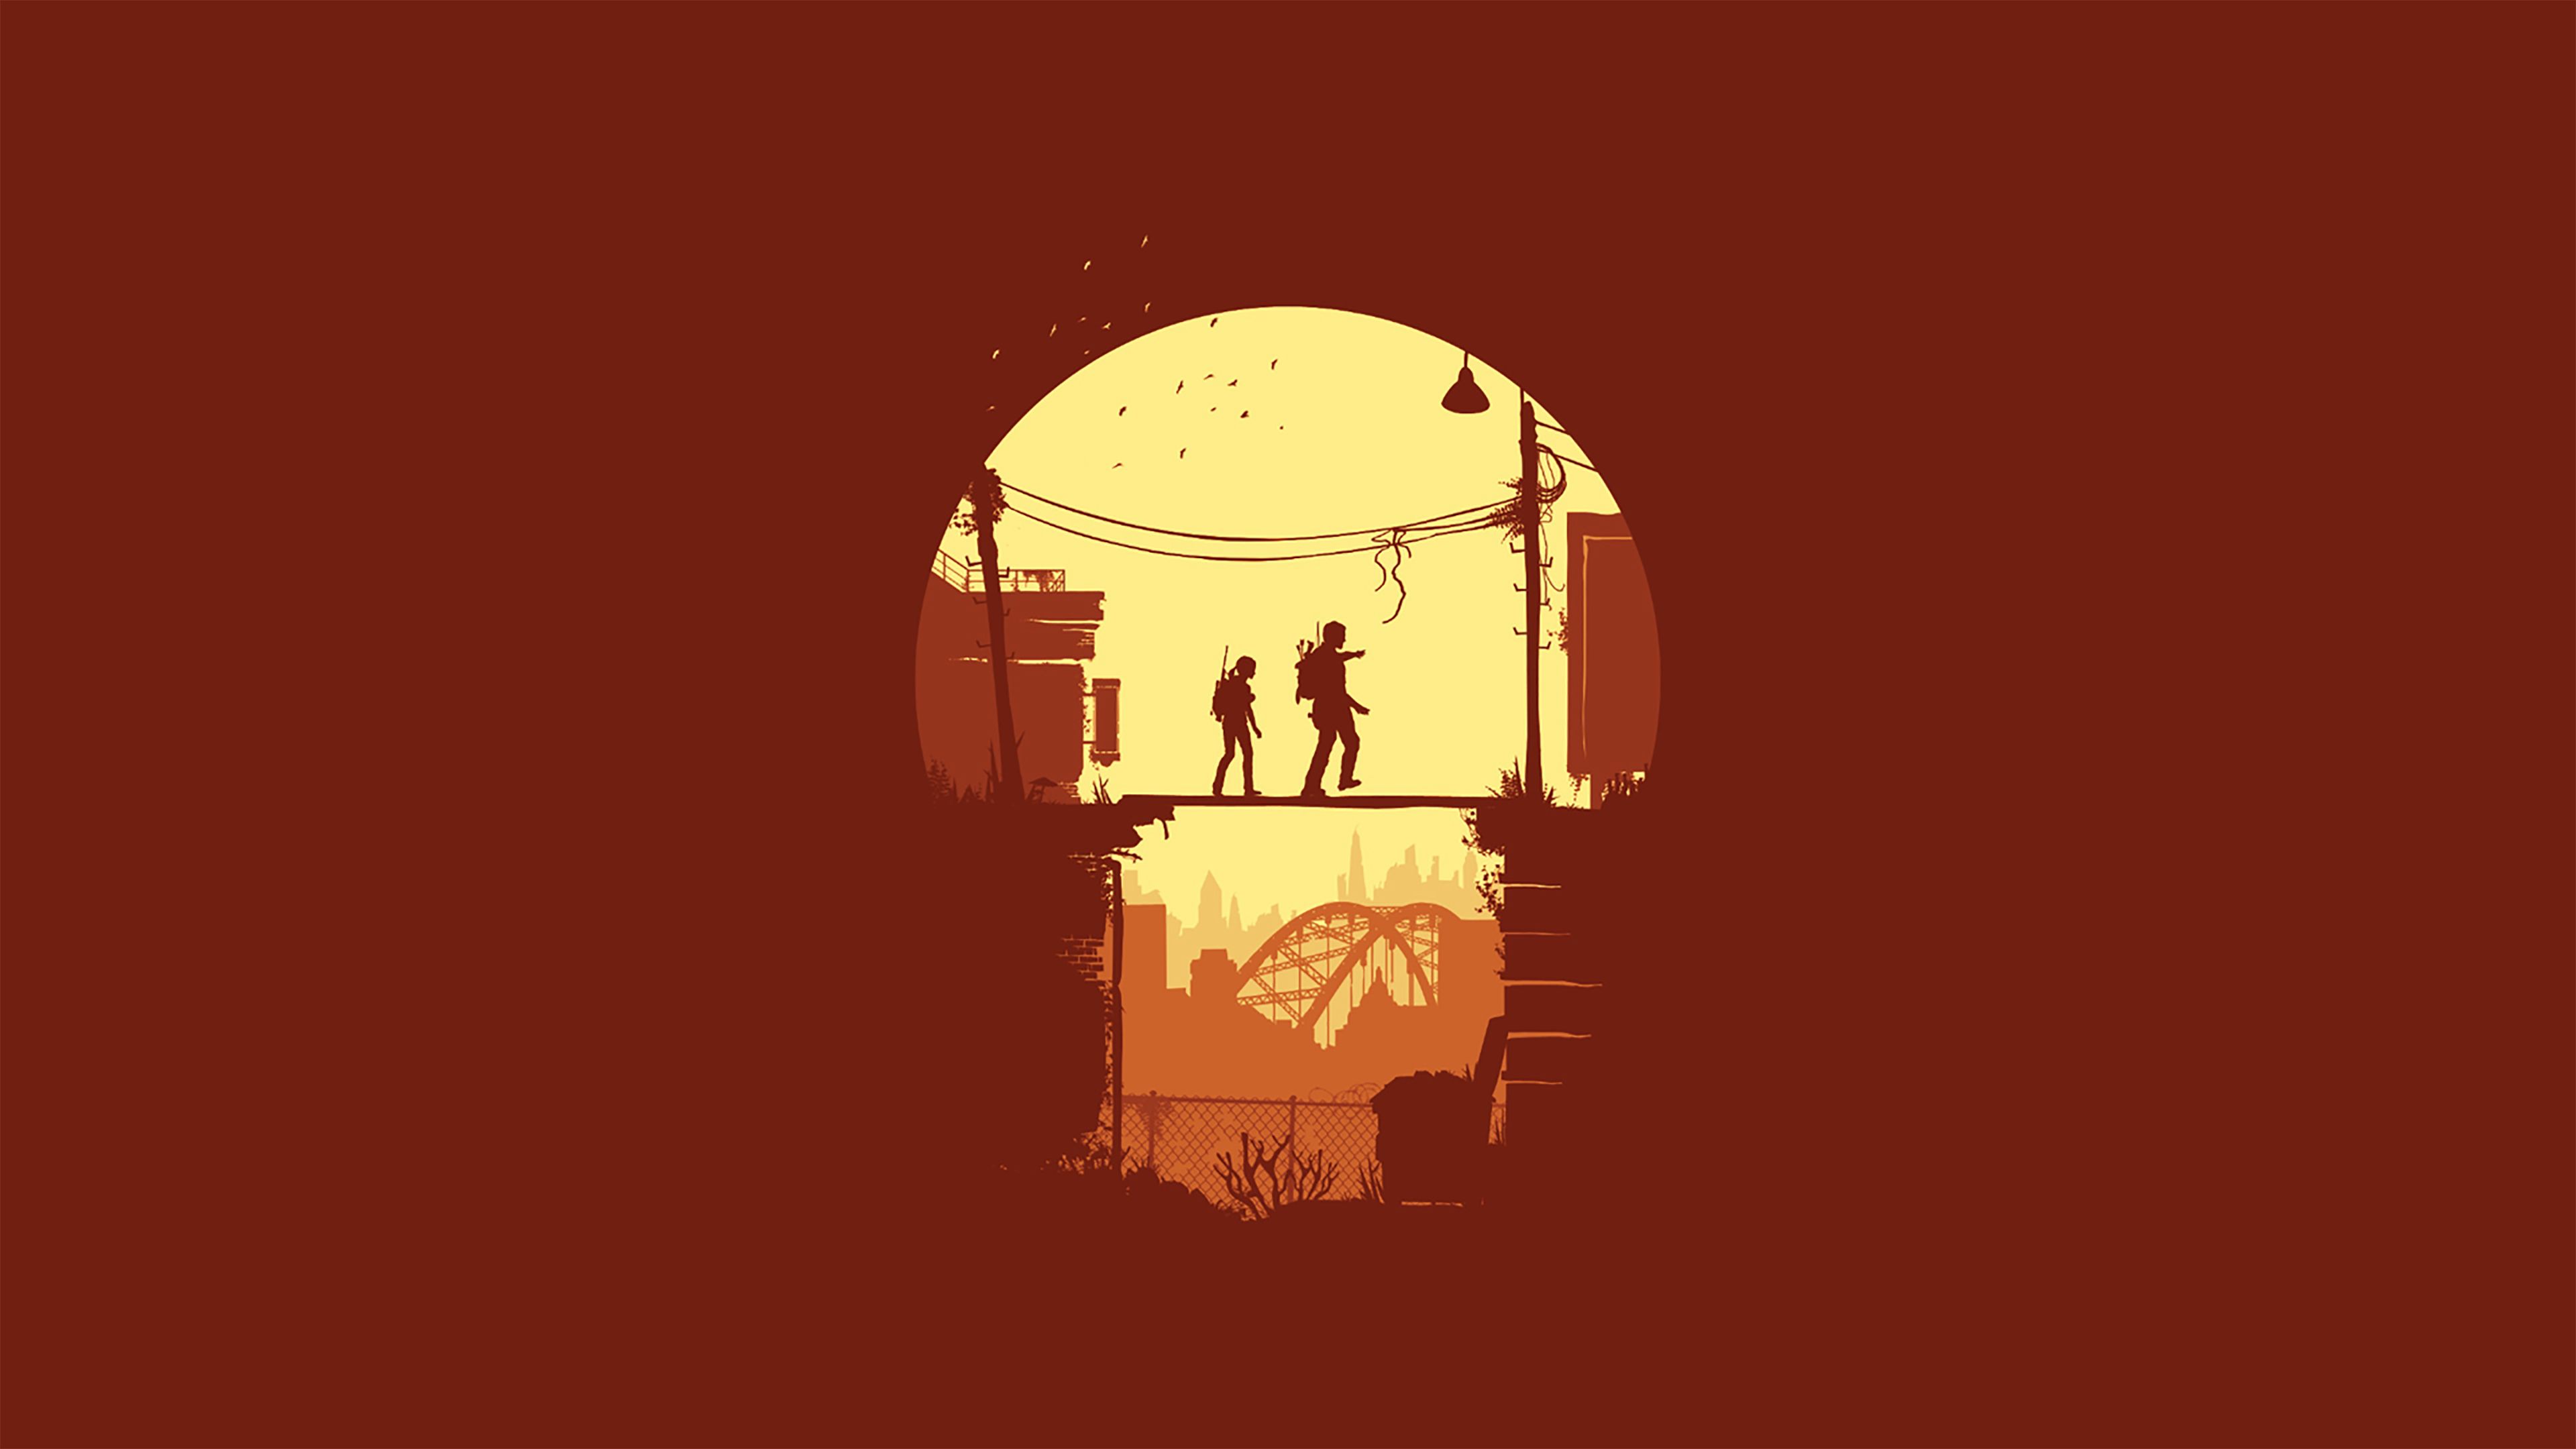 Joel and Ellie The Last Of Us Minimal Wallpaper, HD Minimalist 4K